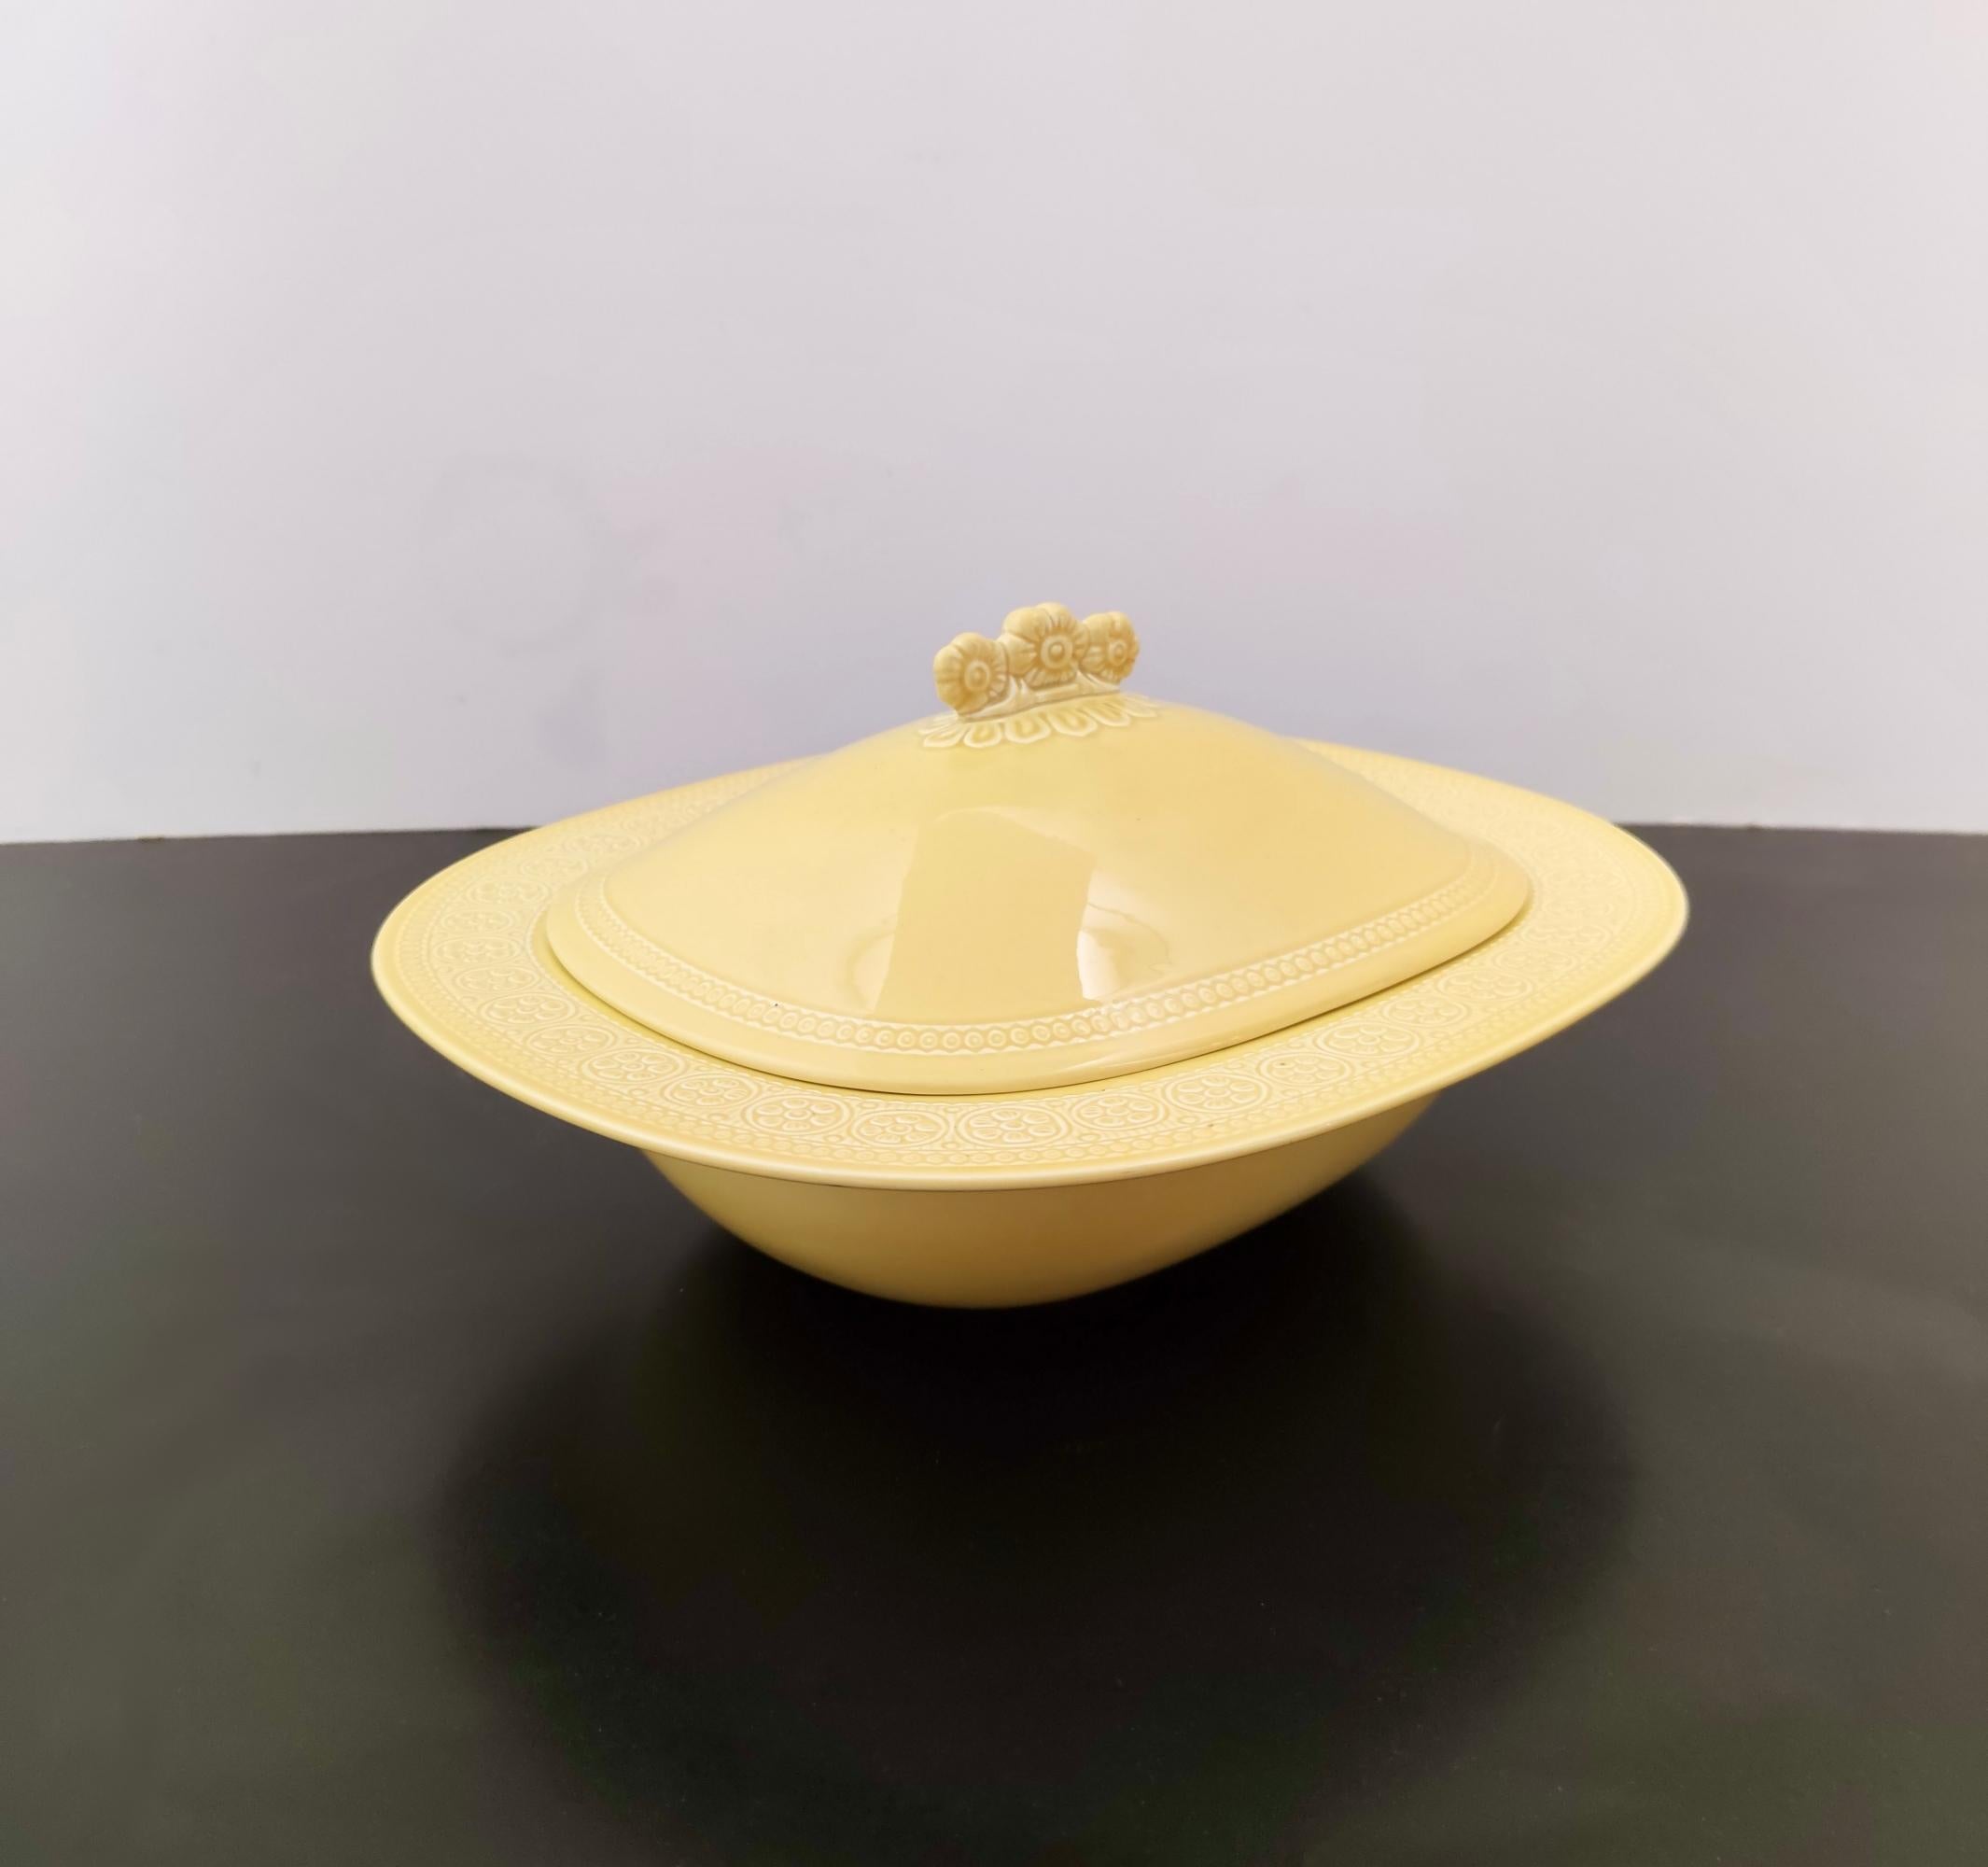 Hergestellt in Italien, 1965. 
Diese Schale für den Tafelaufsatz ist aus gelb lackiertem Steingut mit bossierten Verzierungen hergestellt.
Da es sich um einen Vintage-Artikel handelt, kann er leichte Gebrauchsspuren aufweisen, befindet sich aber in